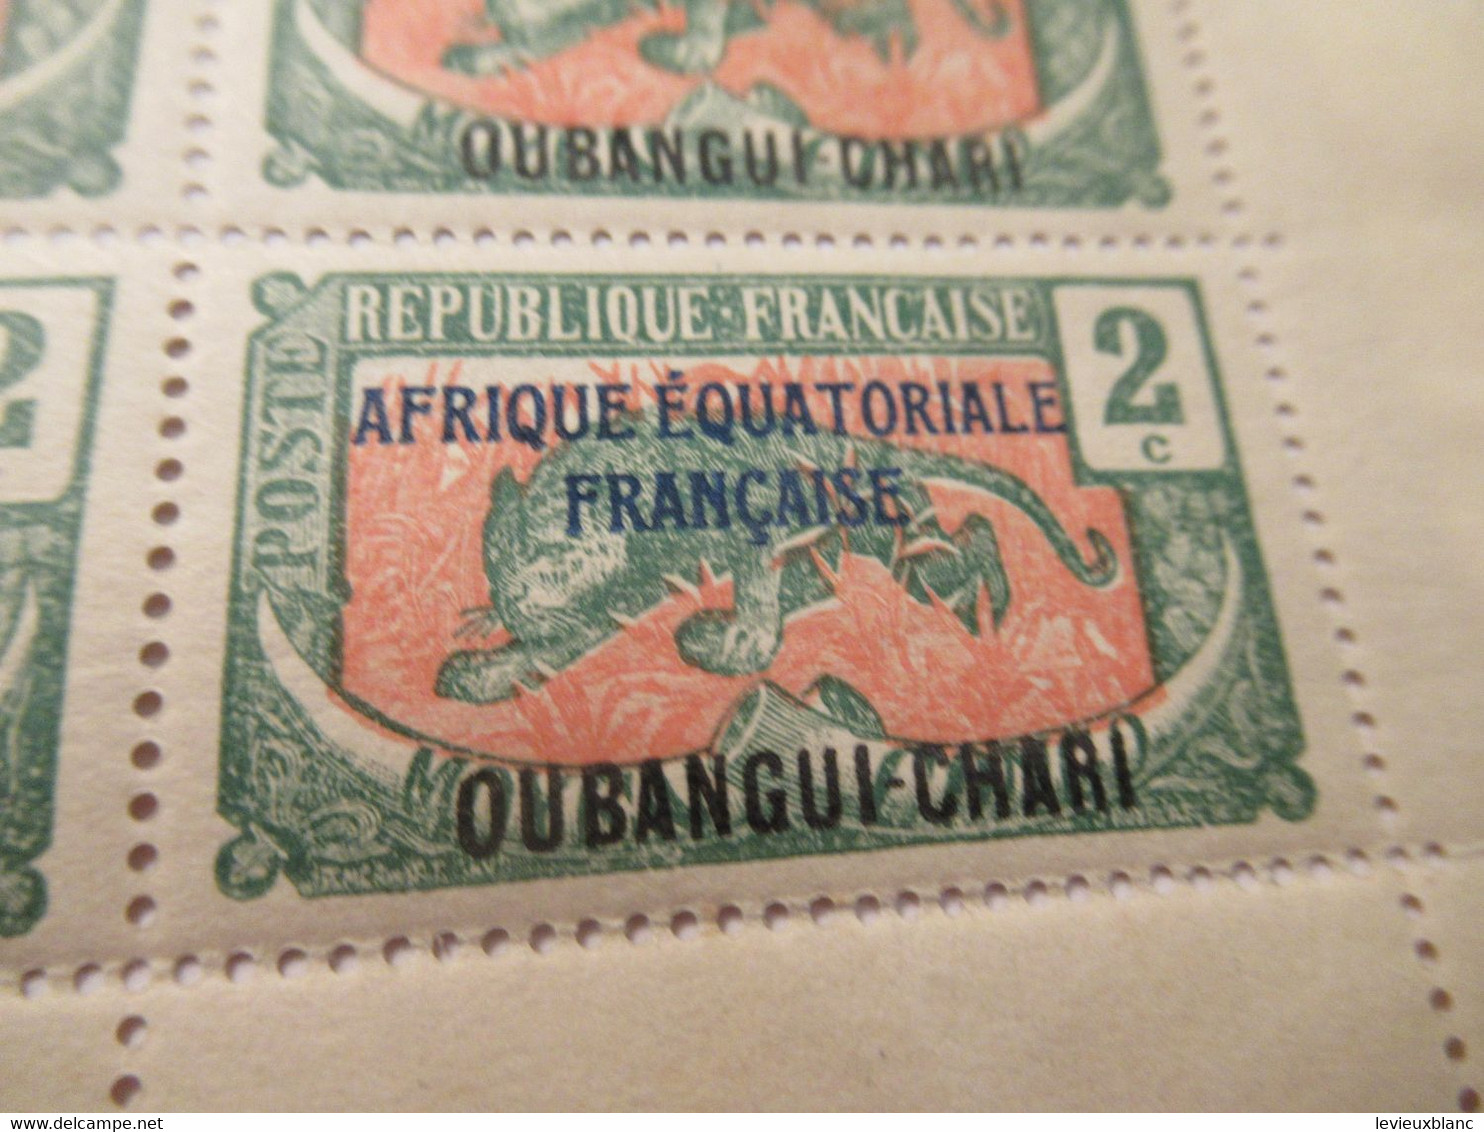 Plaque Complète De 25 Timbres 2C Anciens/Moyen Congo 1907 Surchargés AEF/Oubangui Chari1/Panthère/1924-25     TIMB155 - Africa (Other)